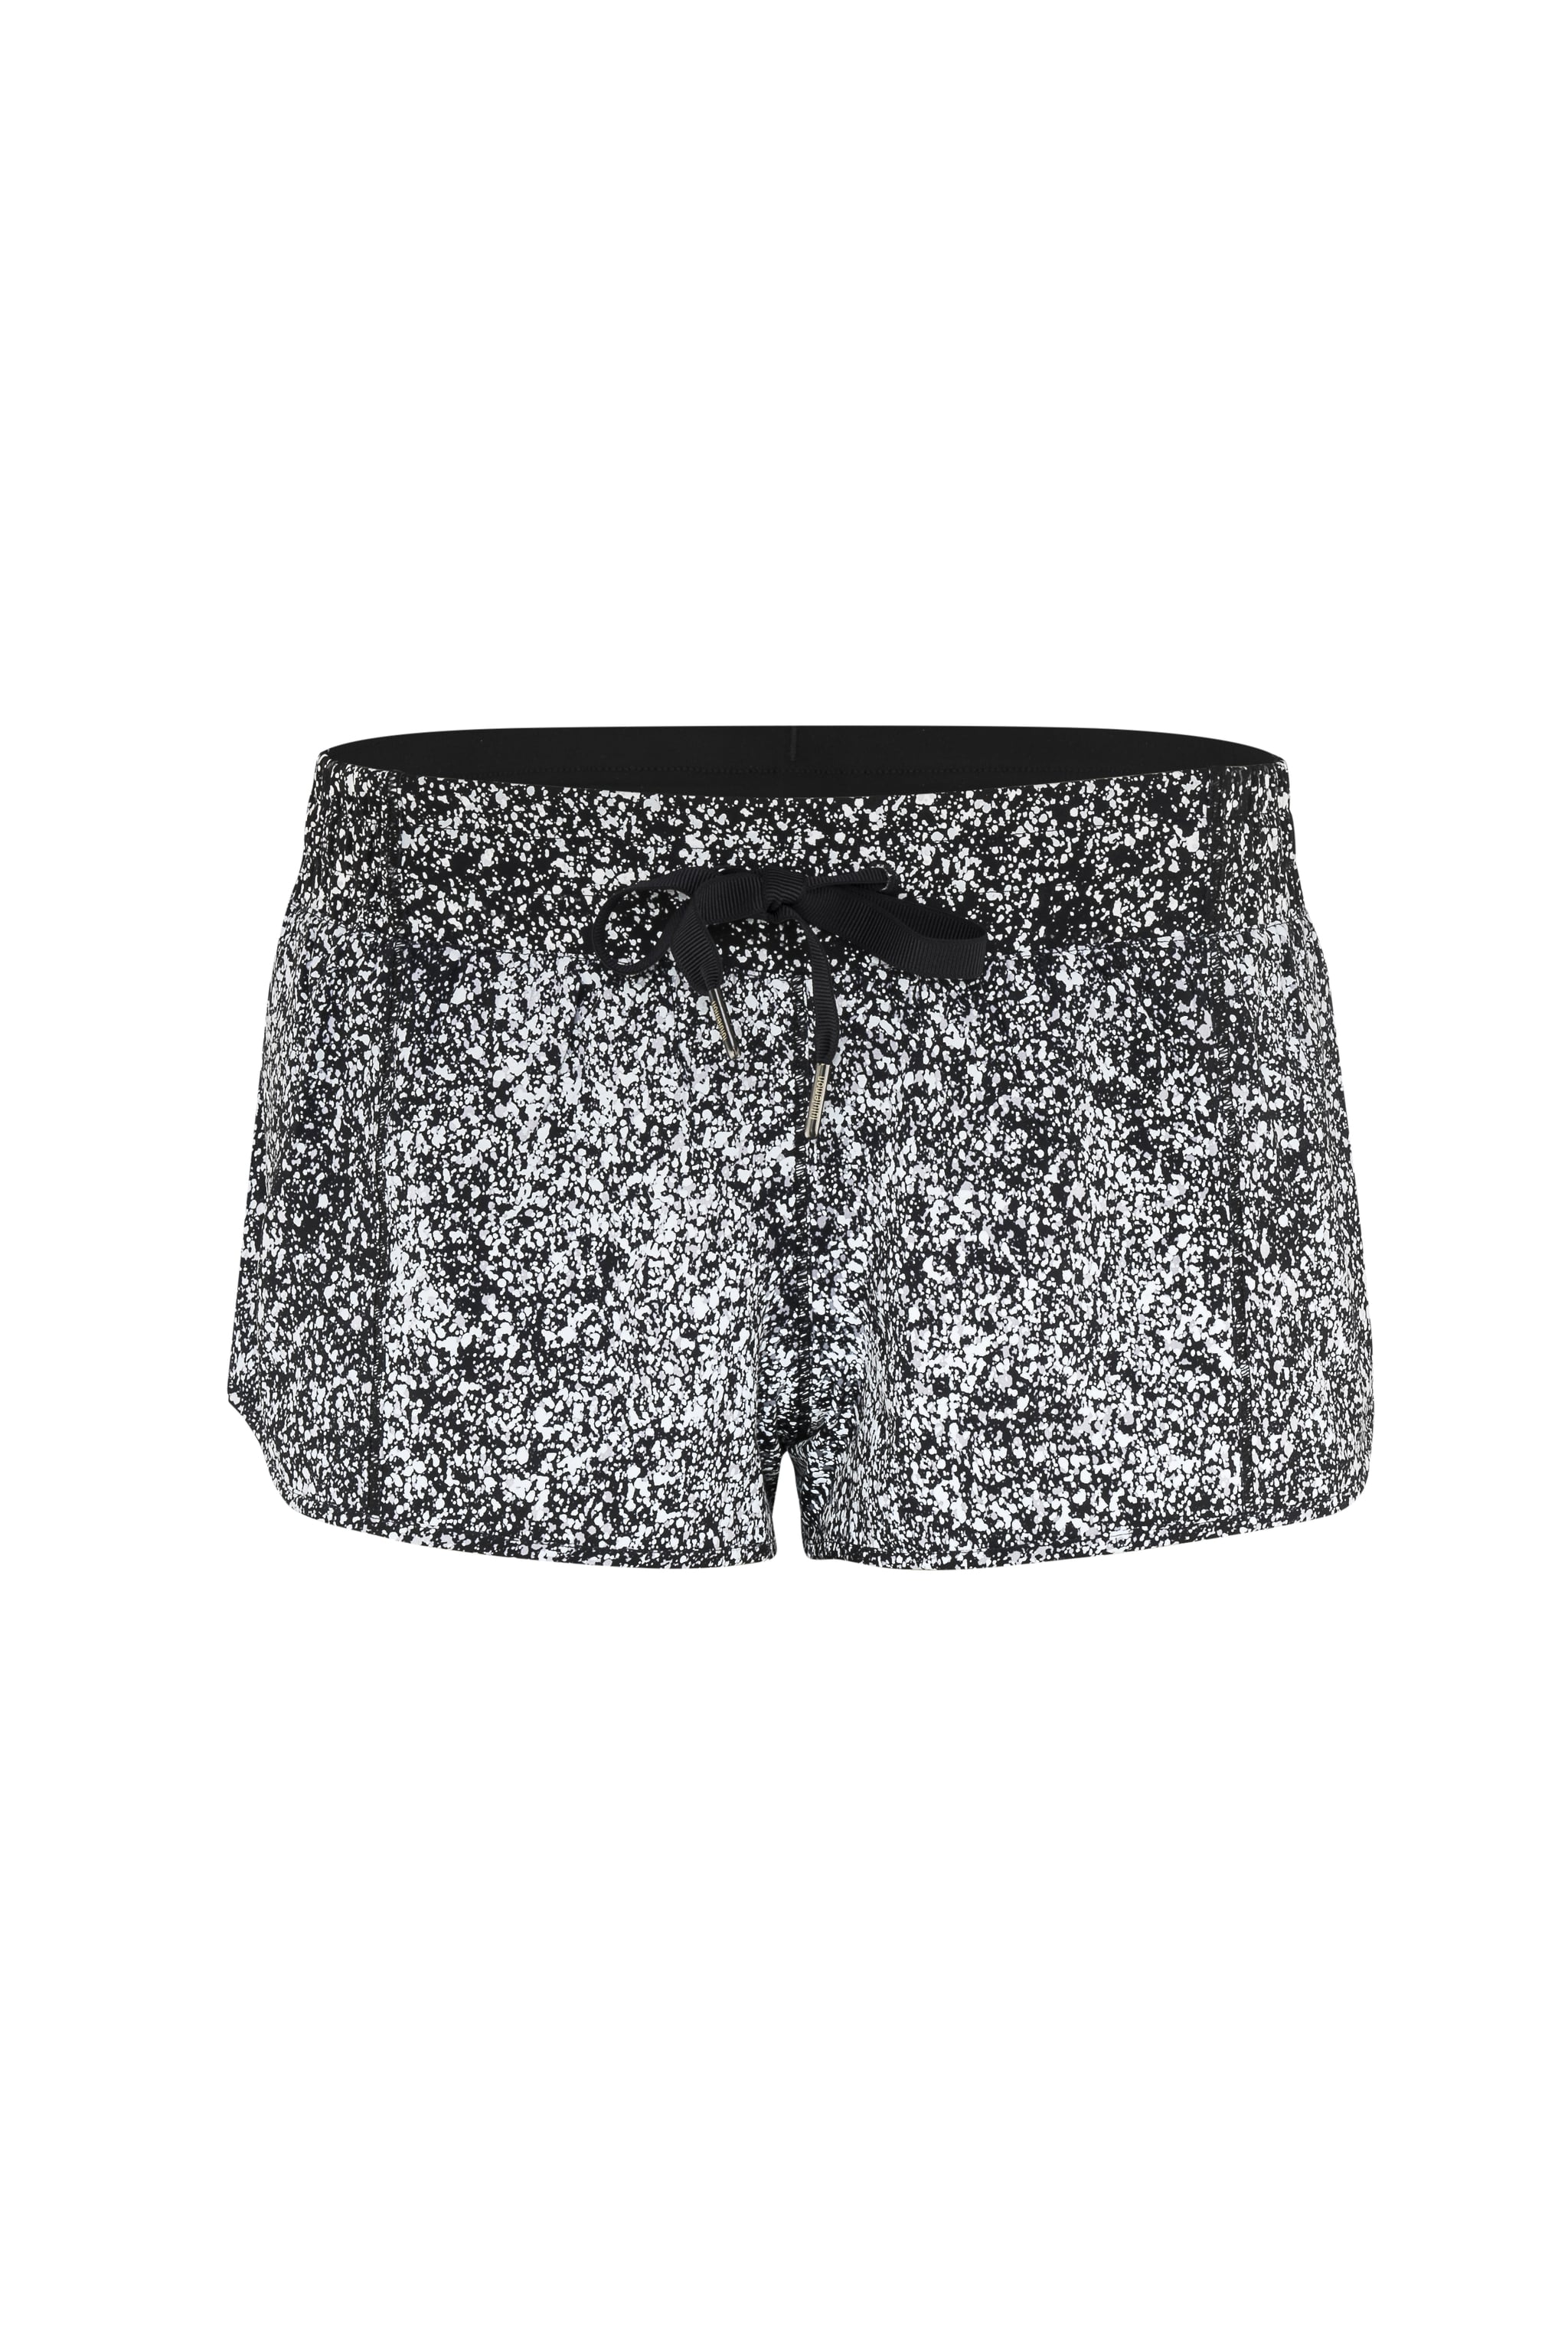 lululemon reflective shorts